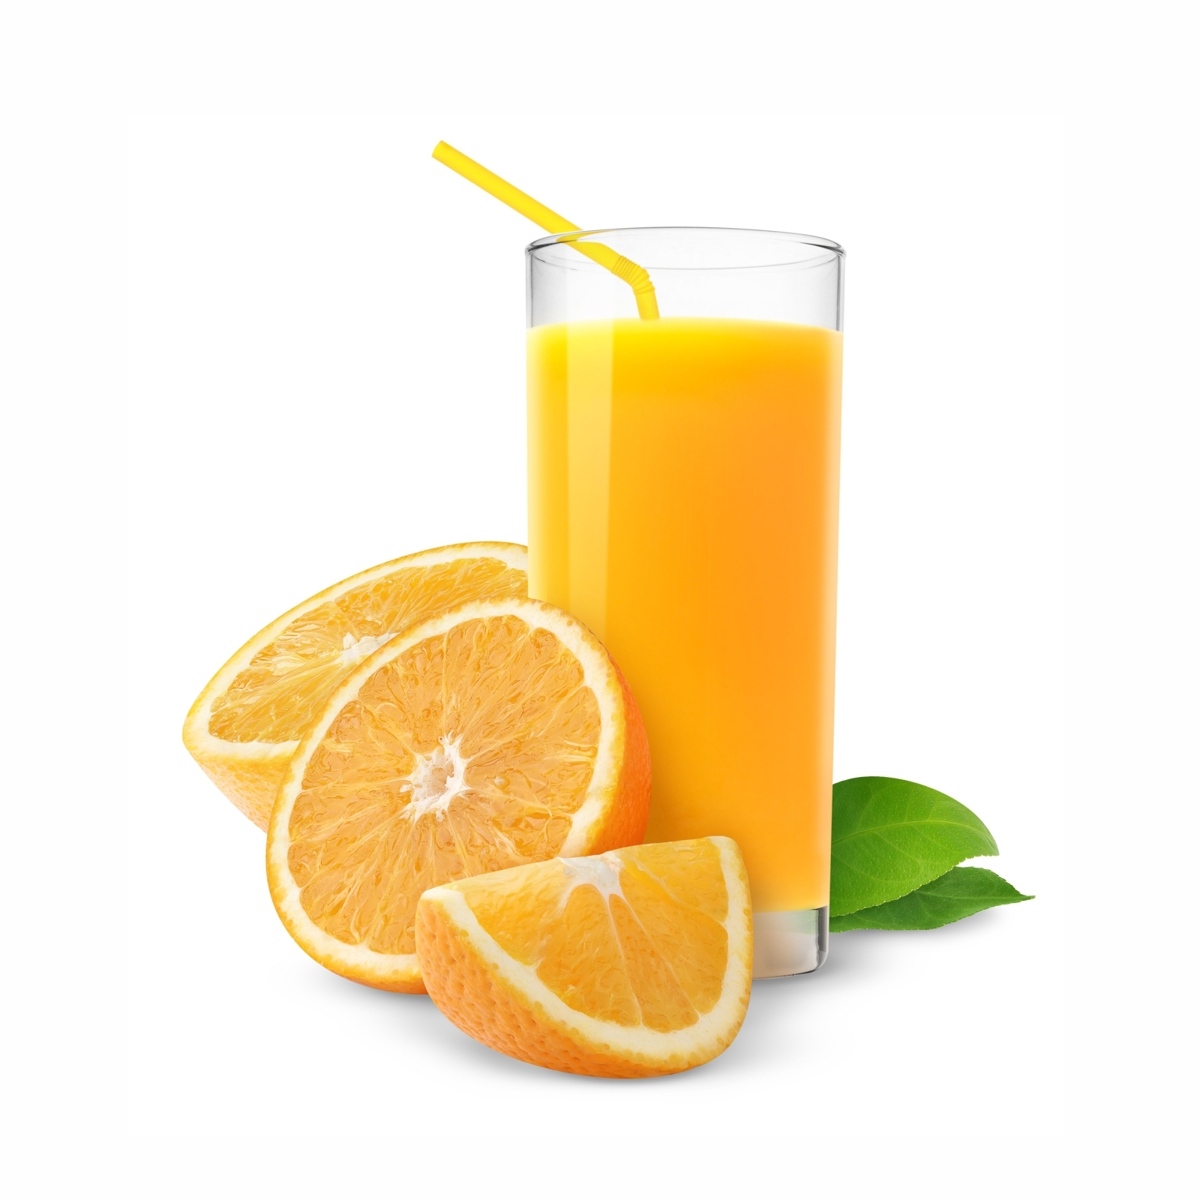 Сок 0.2 л. апельсин